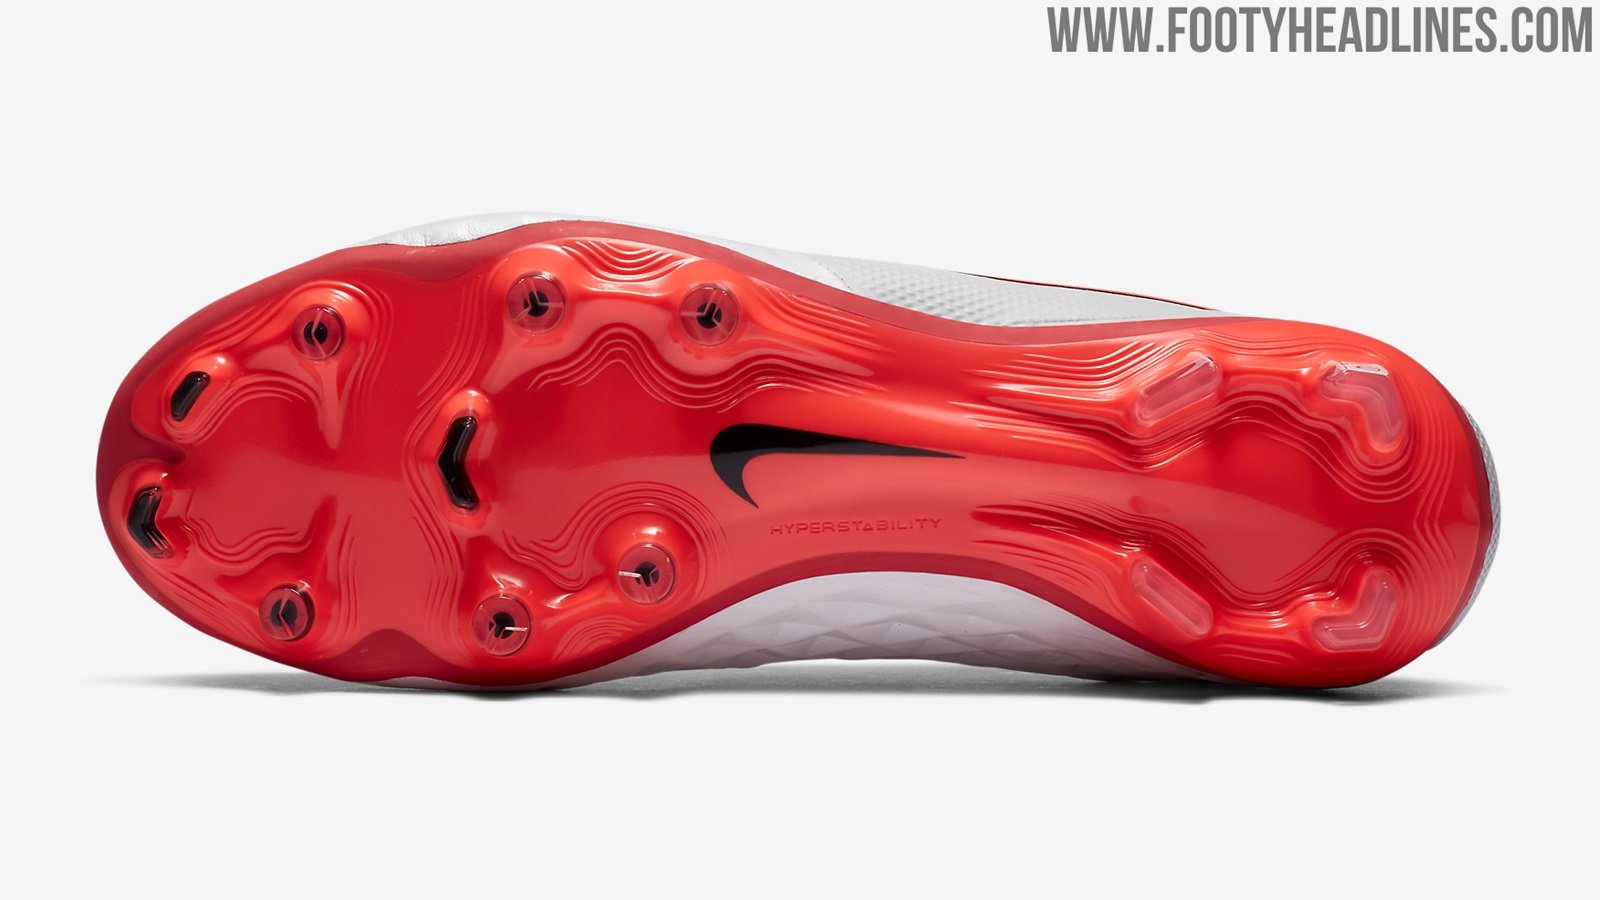 Mặt đế giày sở hữu màu đỏ rực rỡ red/crimson colourway